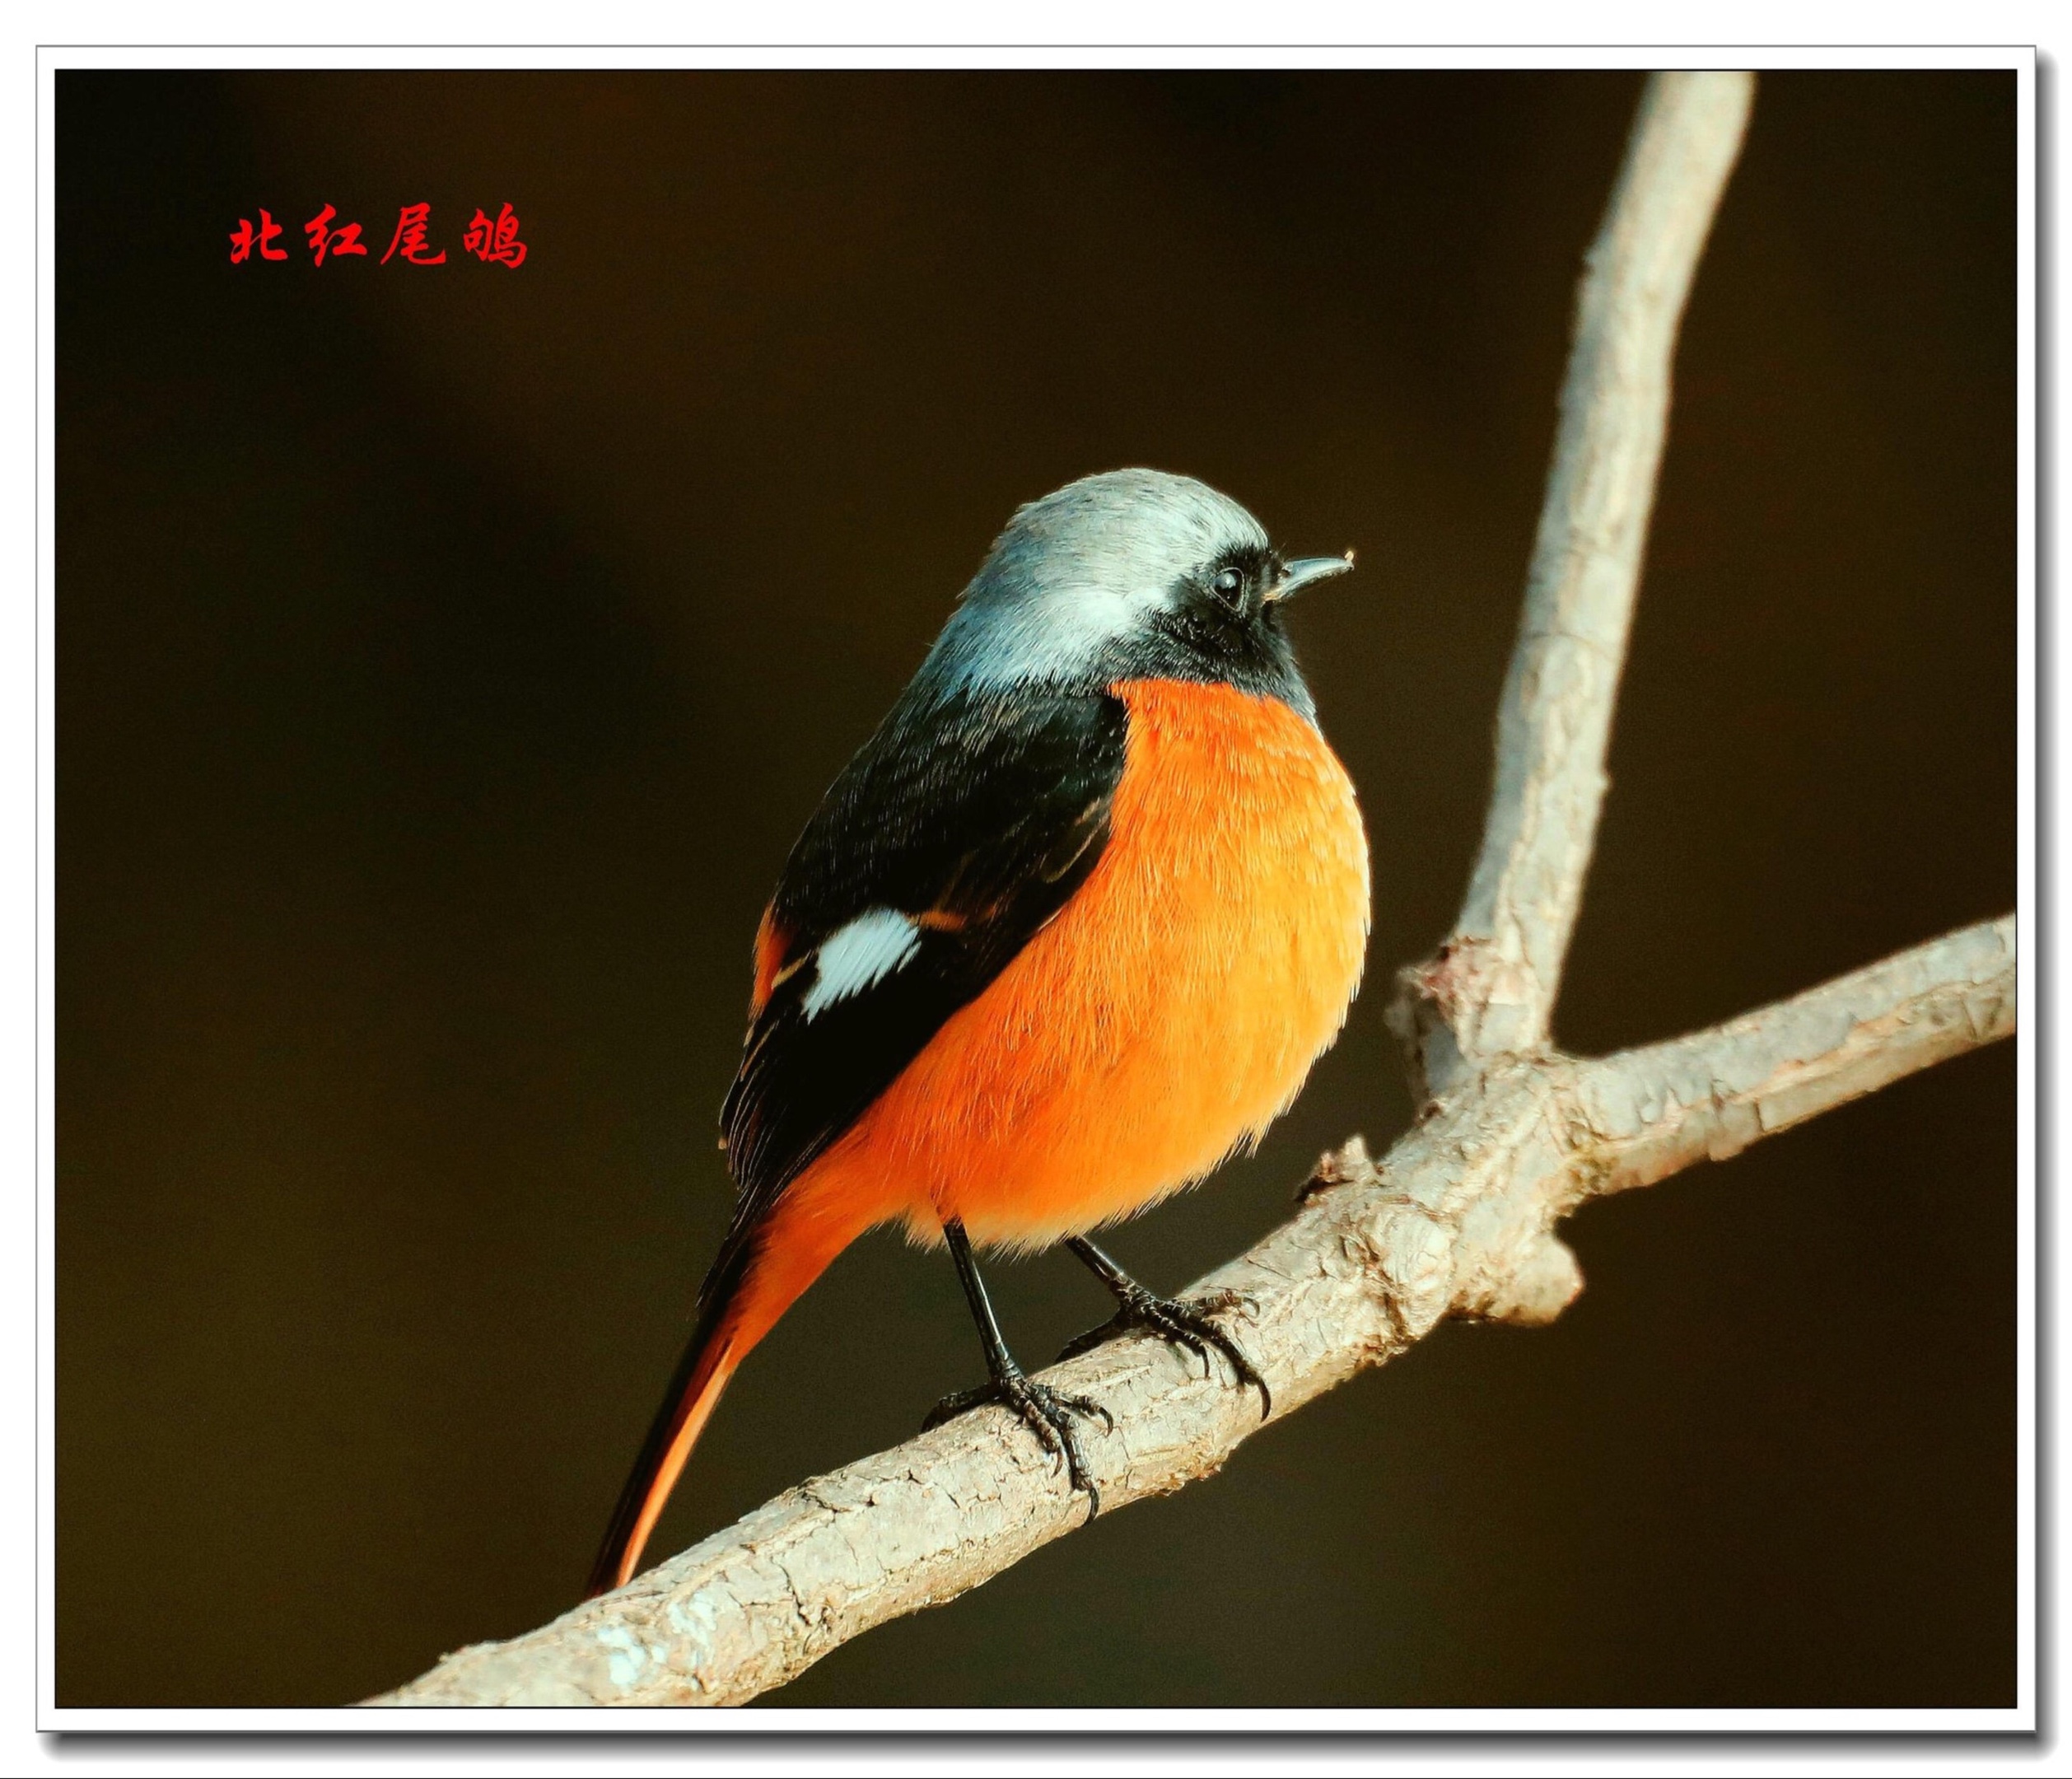 鹟科鸫亚科红尾鸲属,是小型鸟类.